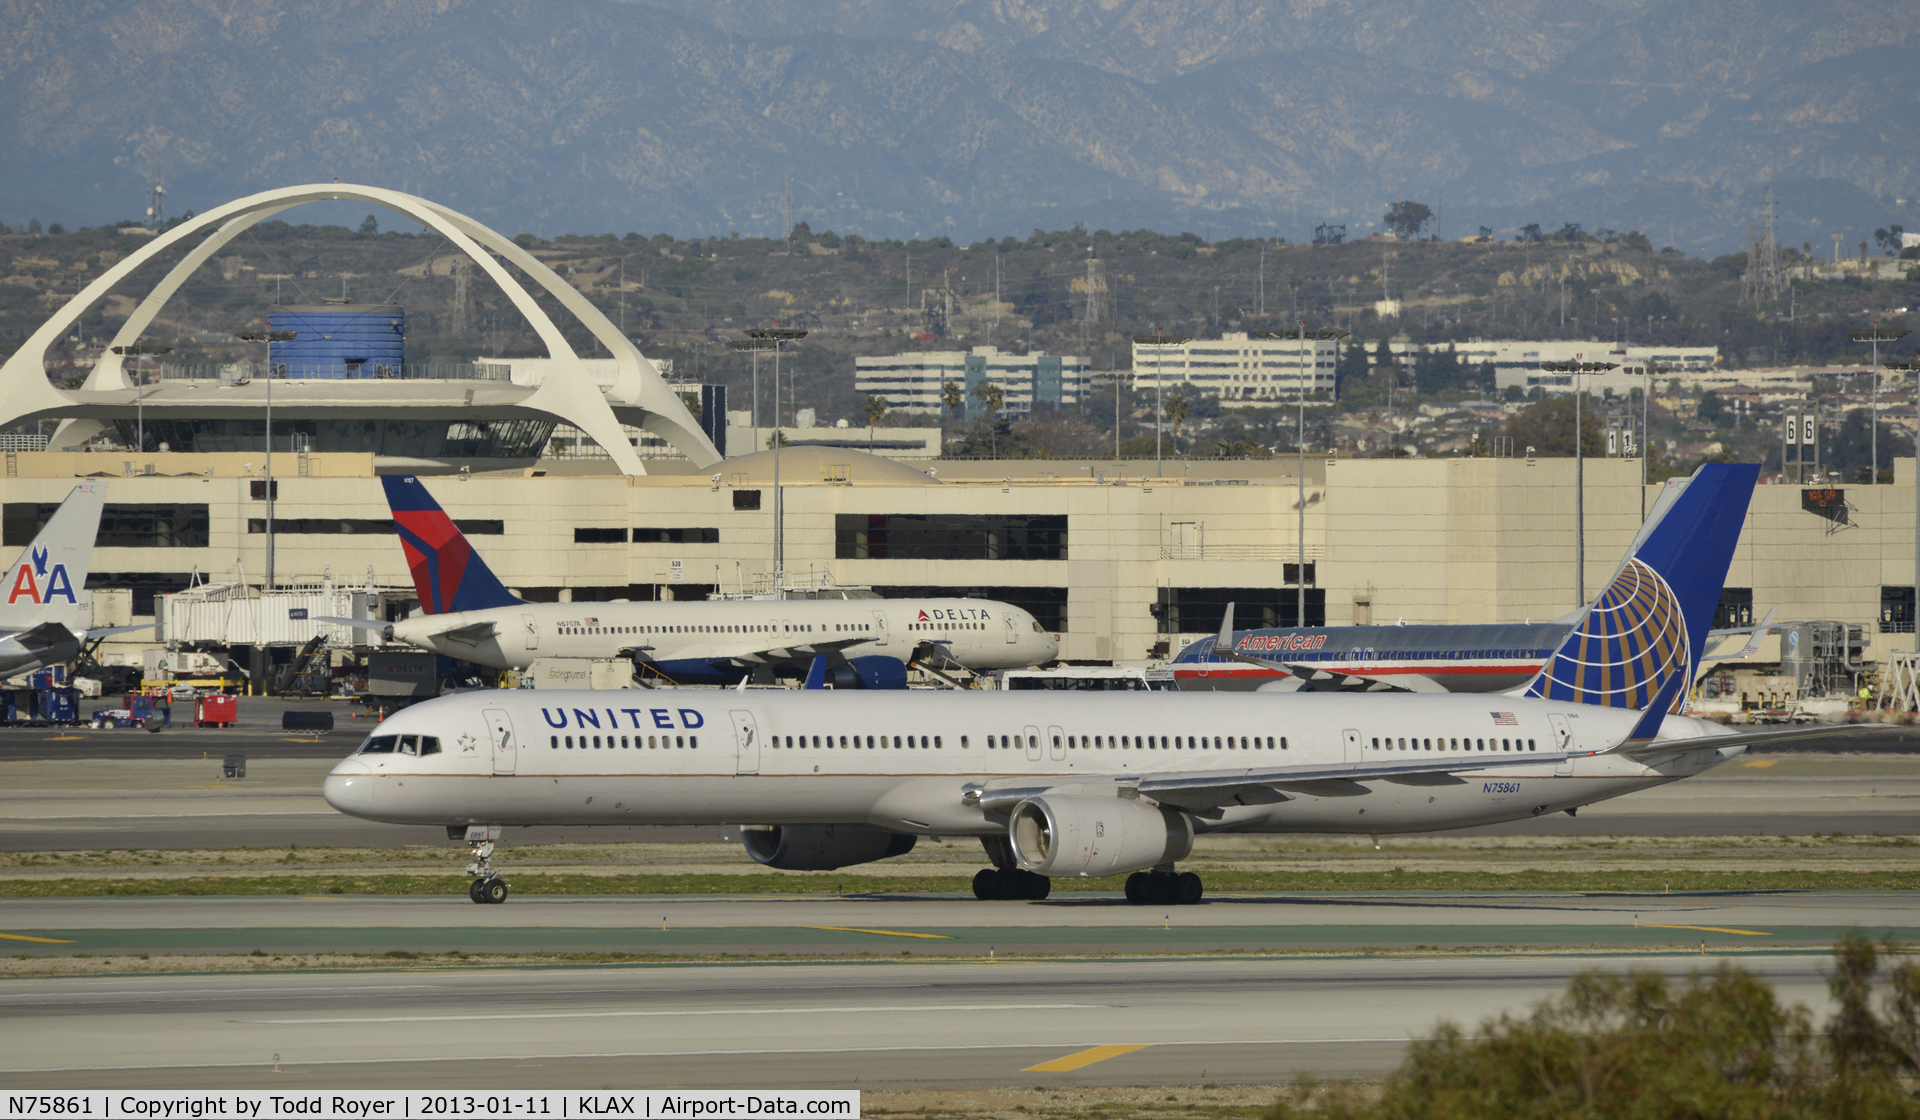 N75861, 2001 Boeing 757-33N C/N 32585, Arriving at LAX on 25L